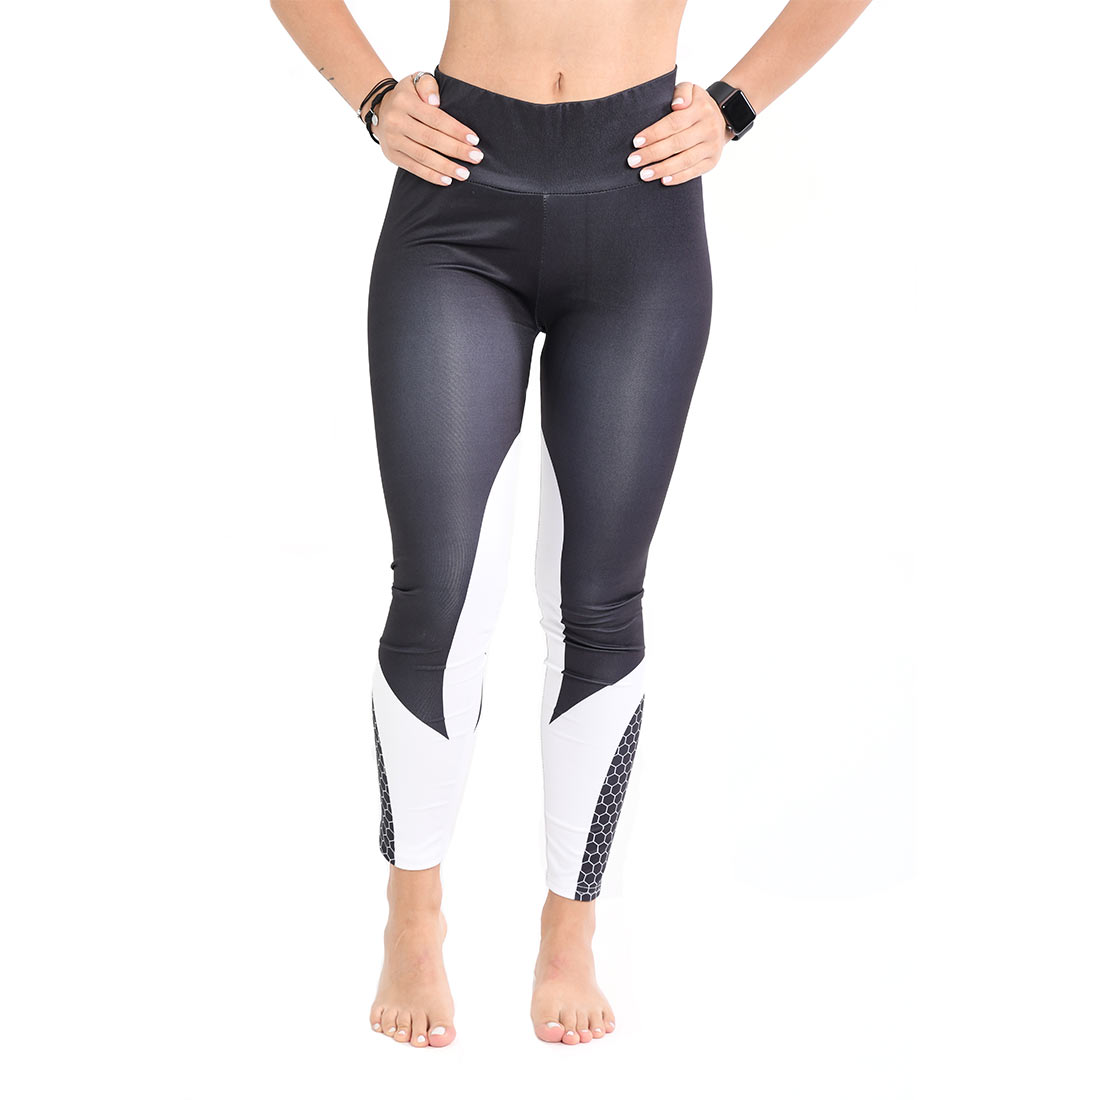 https://gymratline.com/wp-content/uploads/2021/06/black-white-leggings.jpg